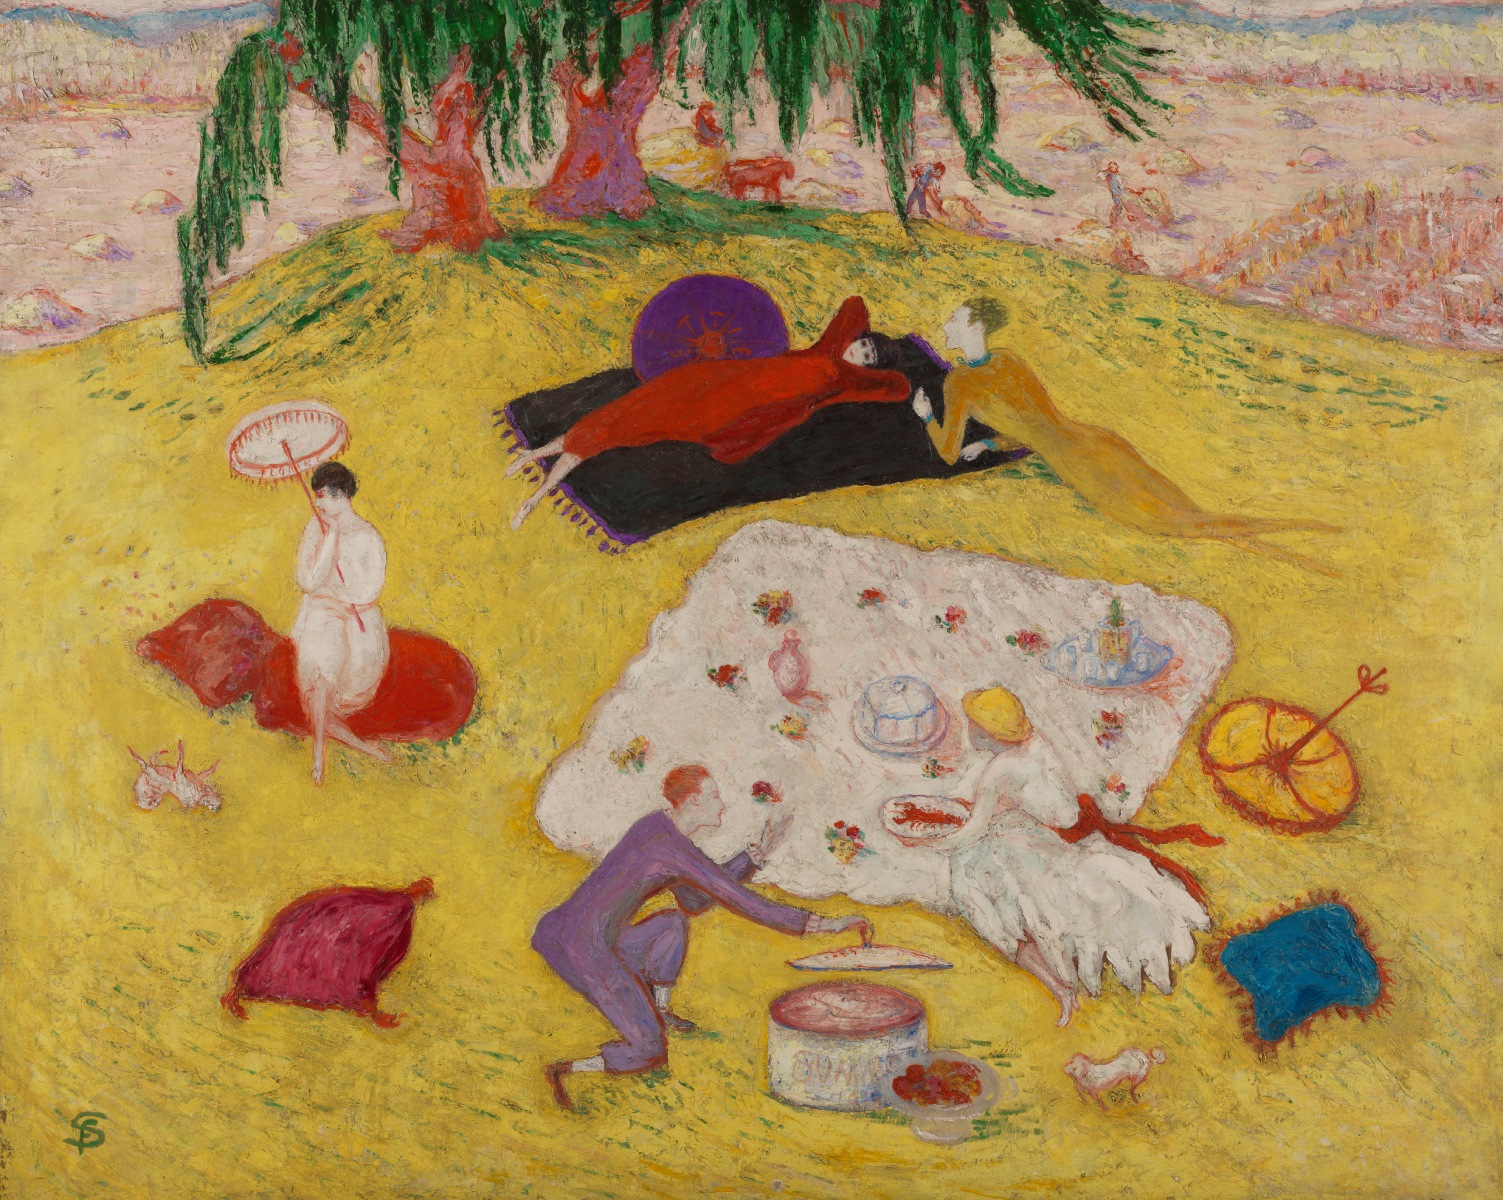 貝德福德山野餐 by Florine Stettheimer - 1918 年 - 102.4 x 127.6 釐米 